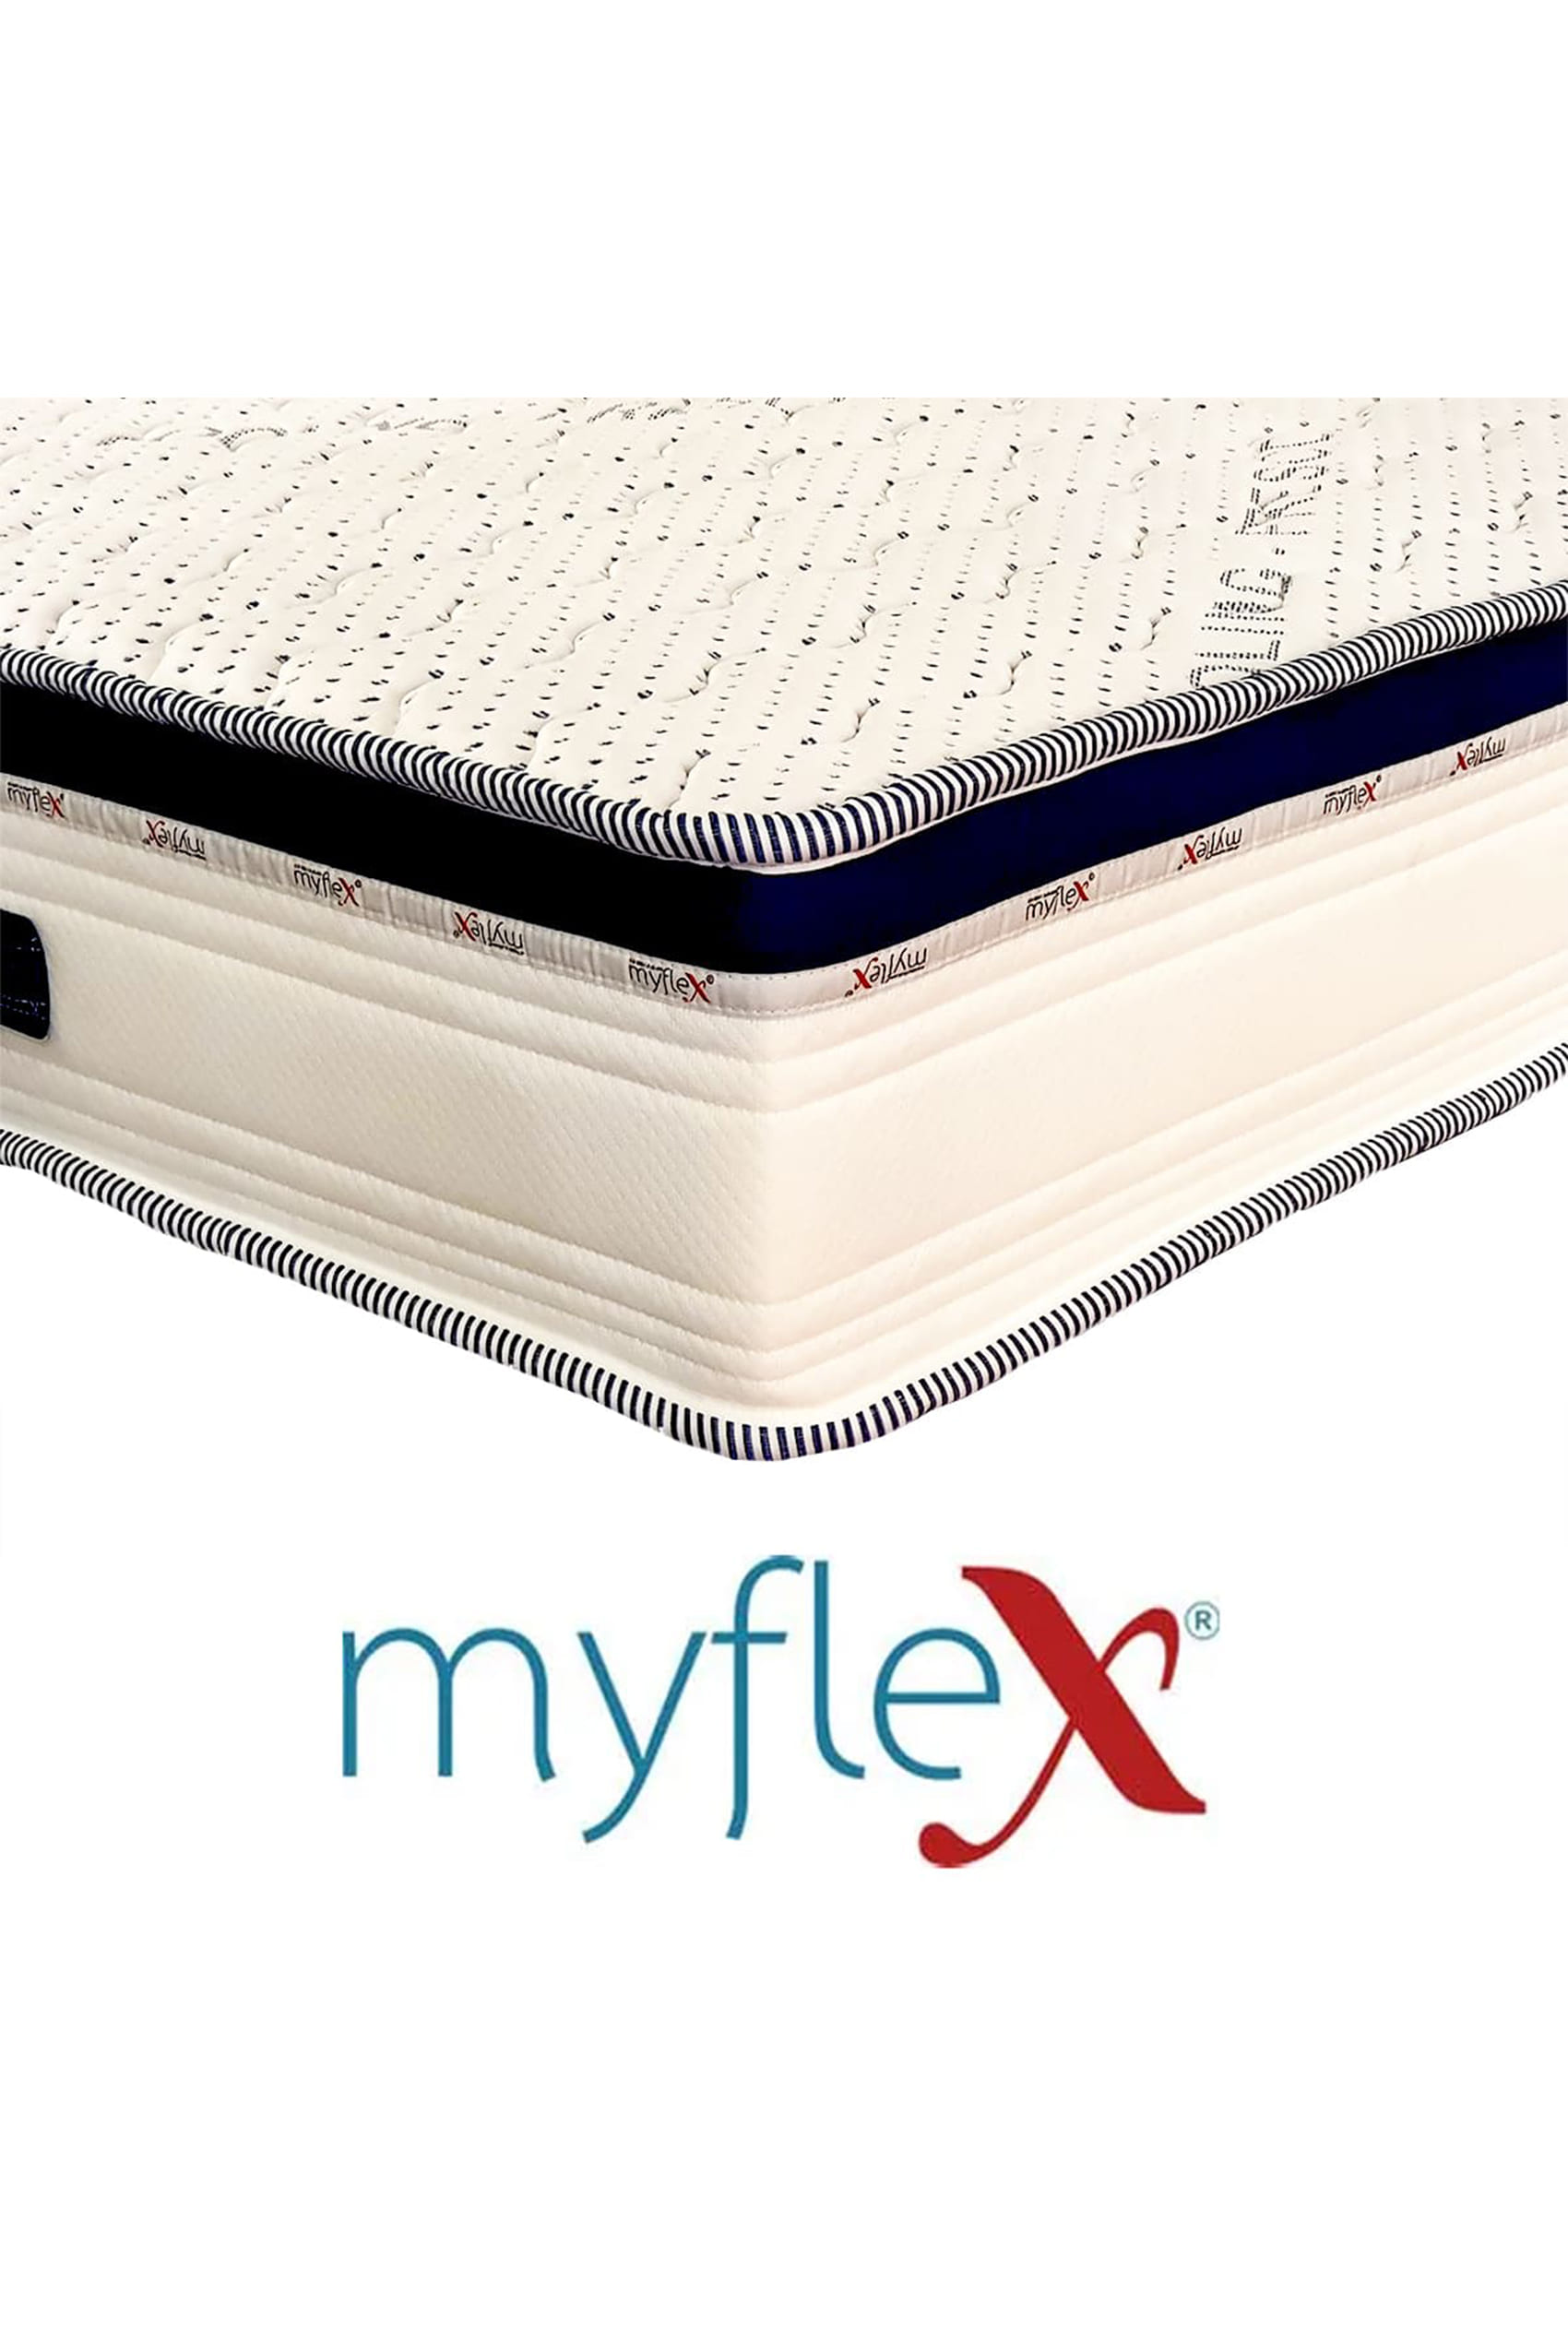 MyFlex Hypnos Cooling Mattress